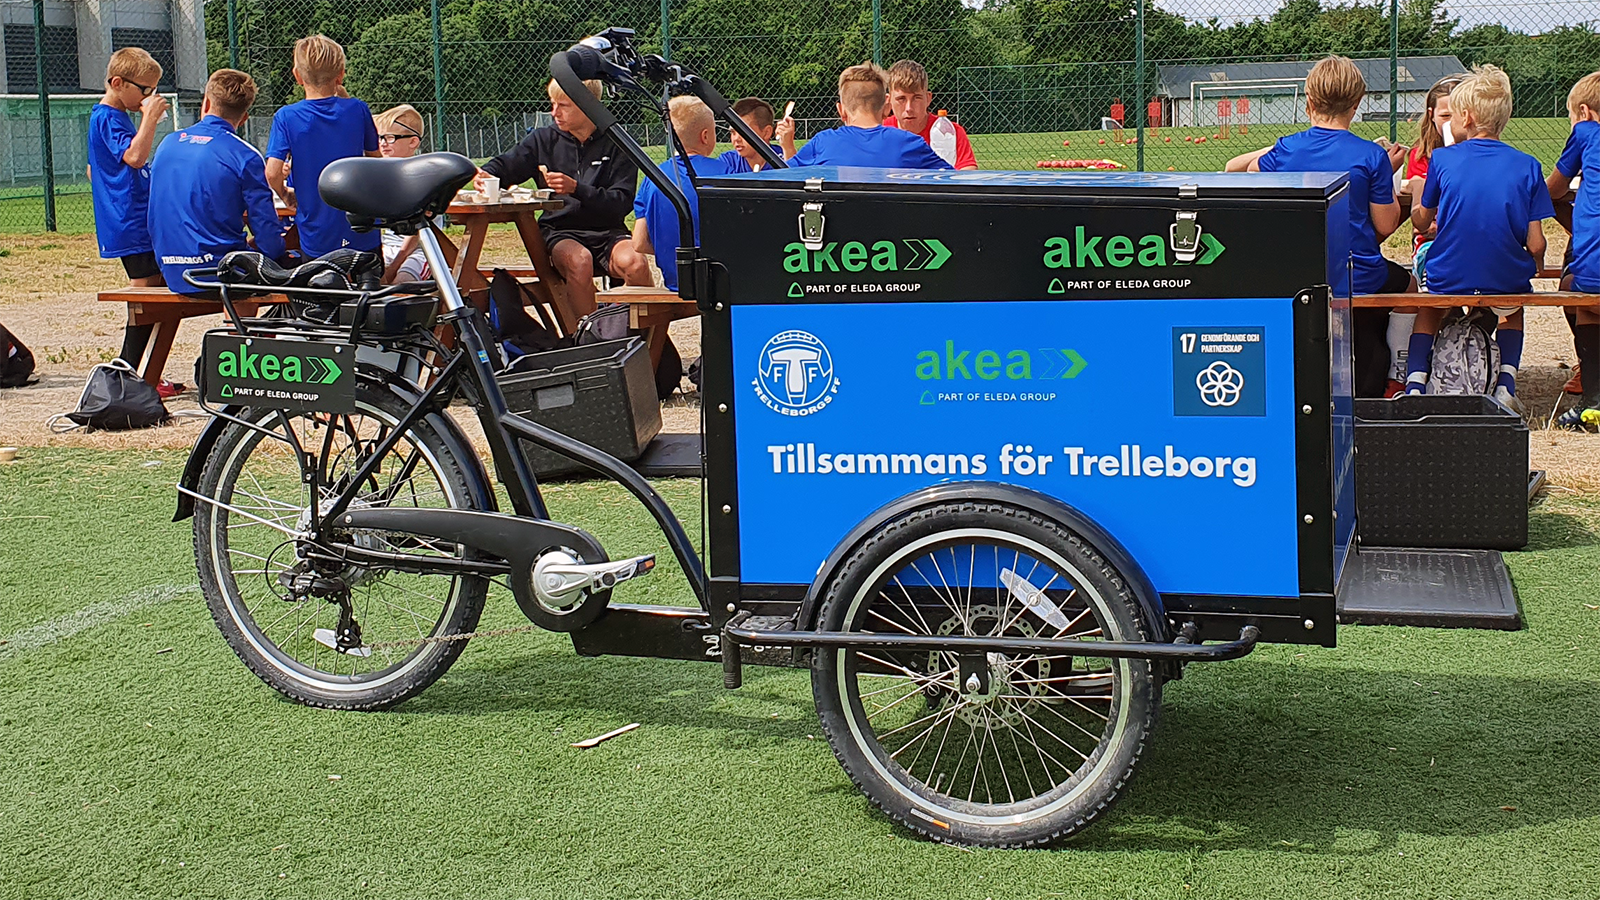 Ungdomsspelare i Trelleborgs FF sitter och äter mellanmål vid träbänkar. I bakgrunden syns en fotbollsplan. I förgrunden, framför spelarna, står en svart lådcykel märkt med Akea och texten "Tillsammans för Trelleborg".